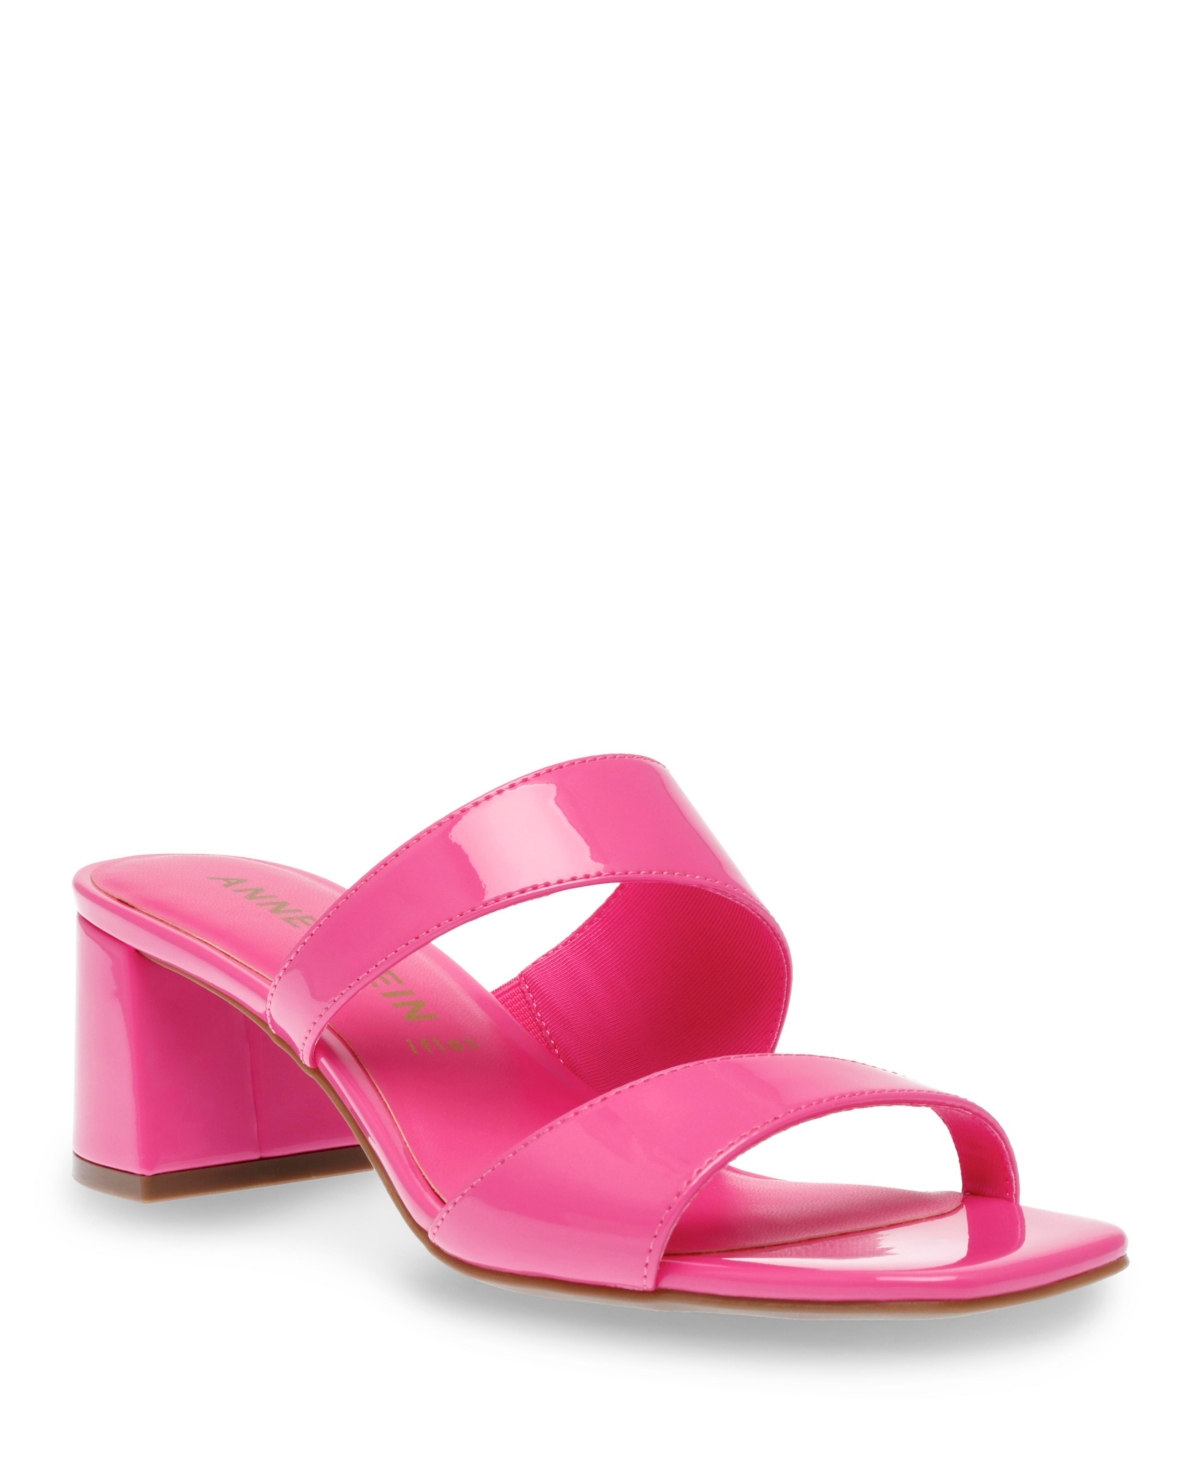 Anne Klein Women's Karma Block Heel Sandals In Pink Patent